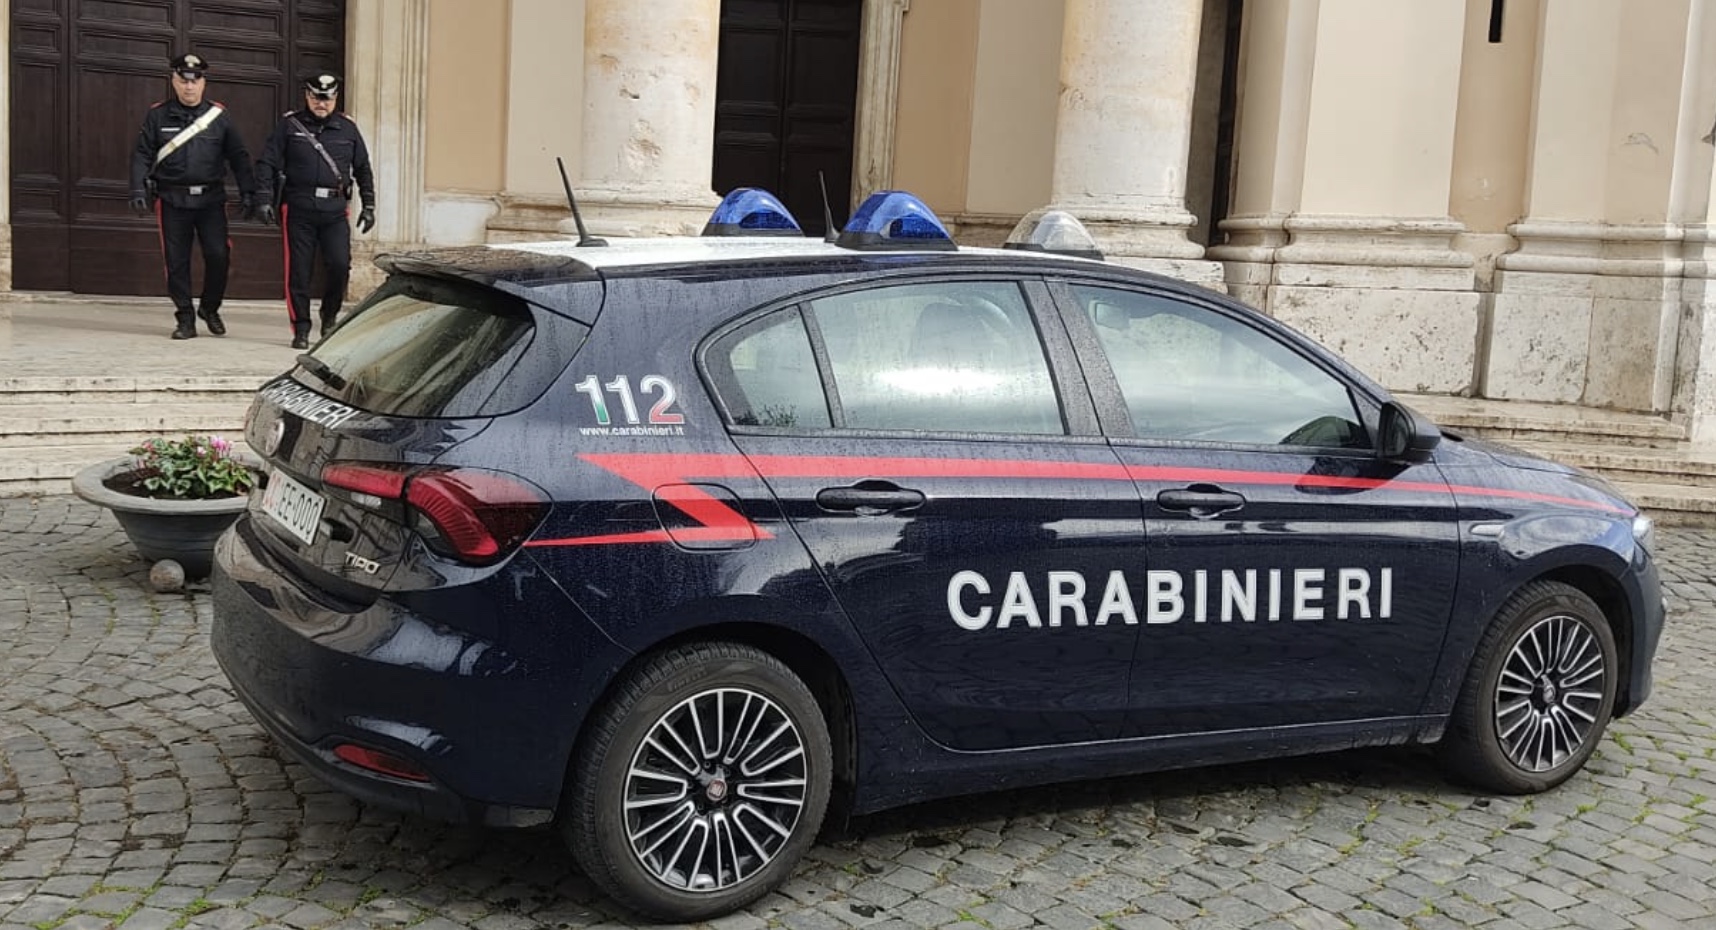 Carabinieri에 의해 체포된 본당 신부에 대한 강탈 시도: "그는 가스통과 라이터를 들고 교회에 들어갔습니다."